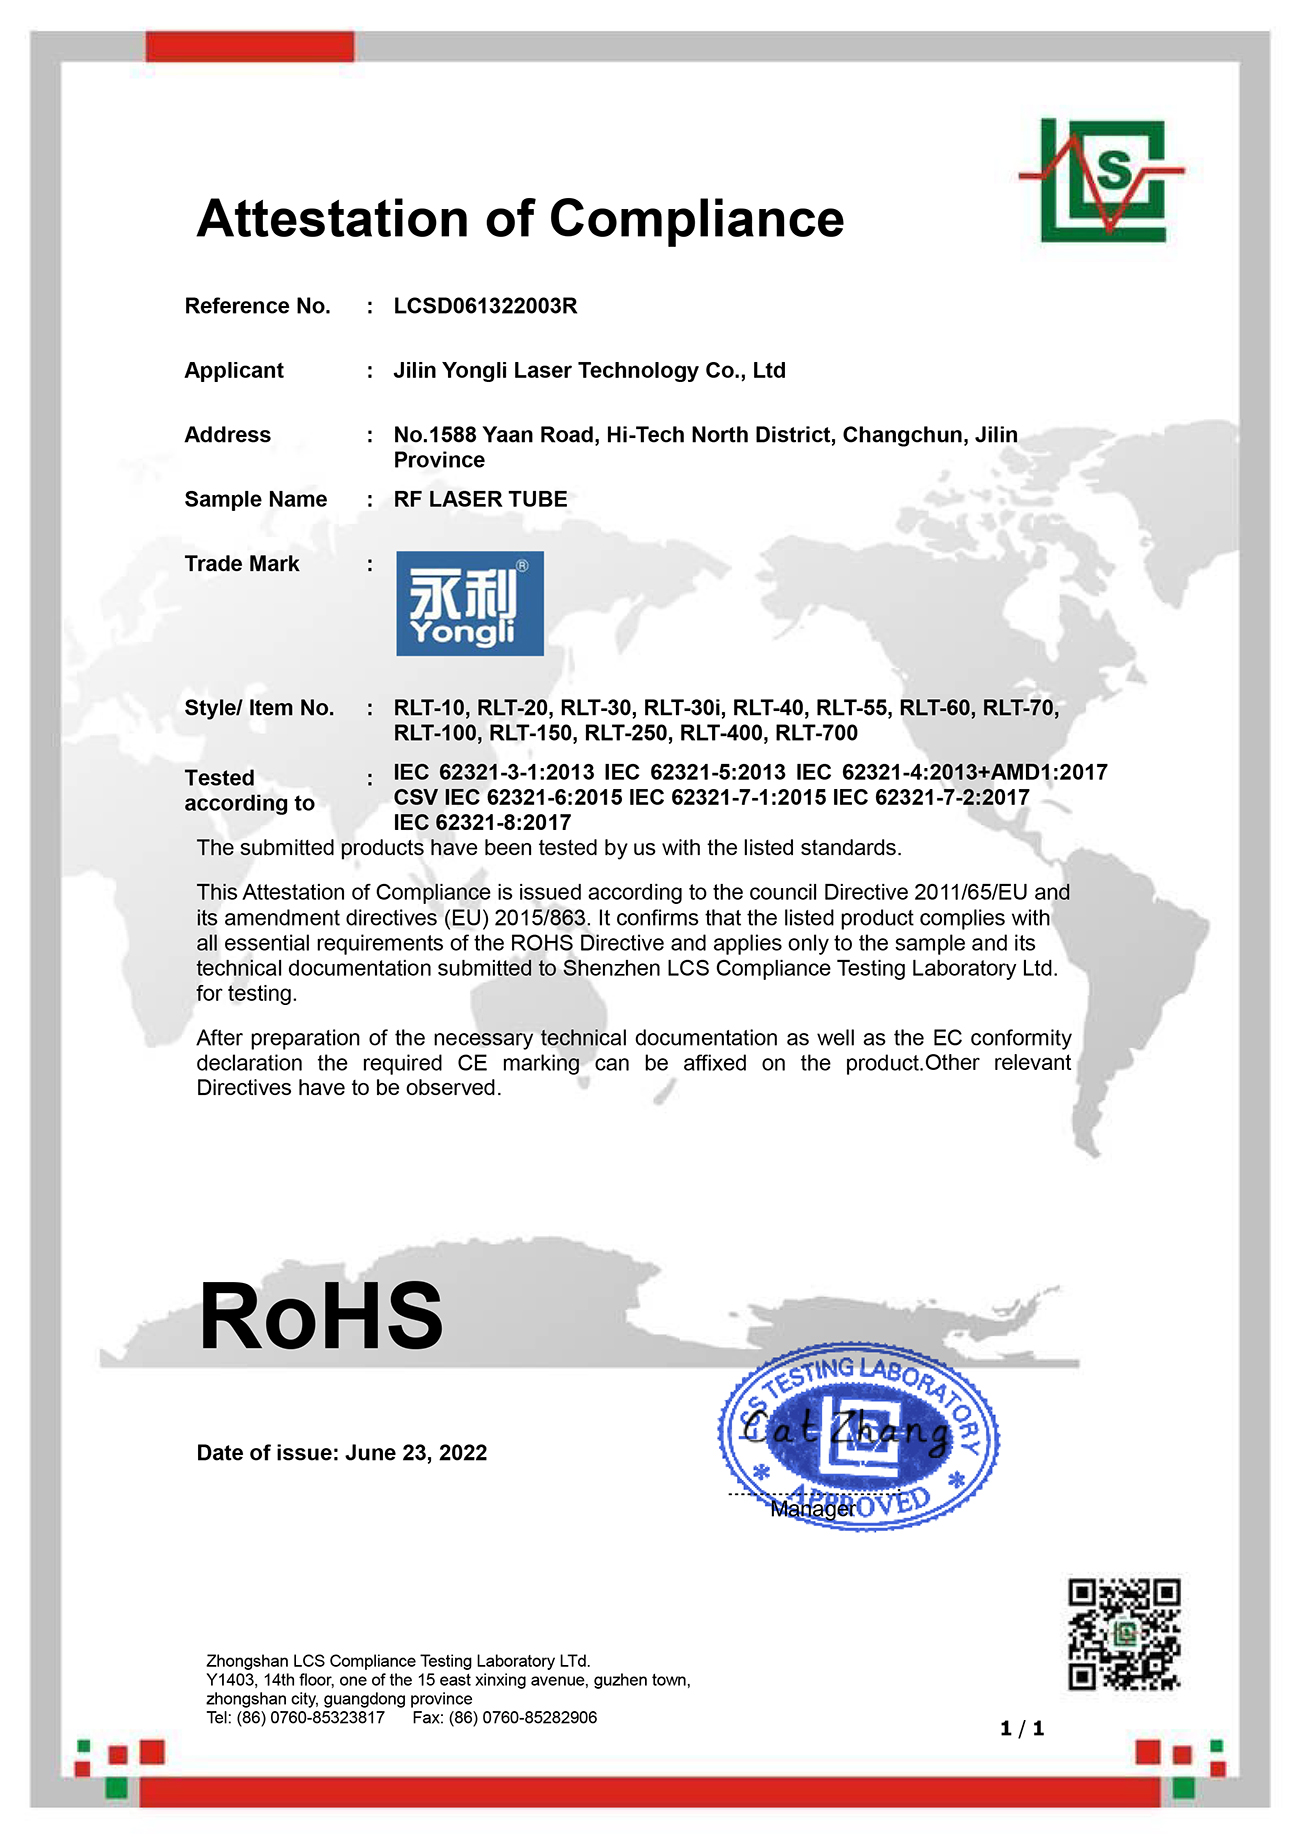 射频激光器 ROHS 证书